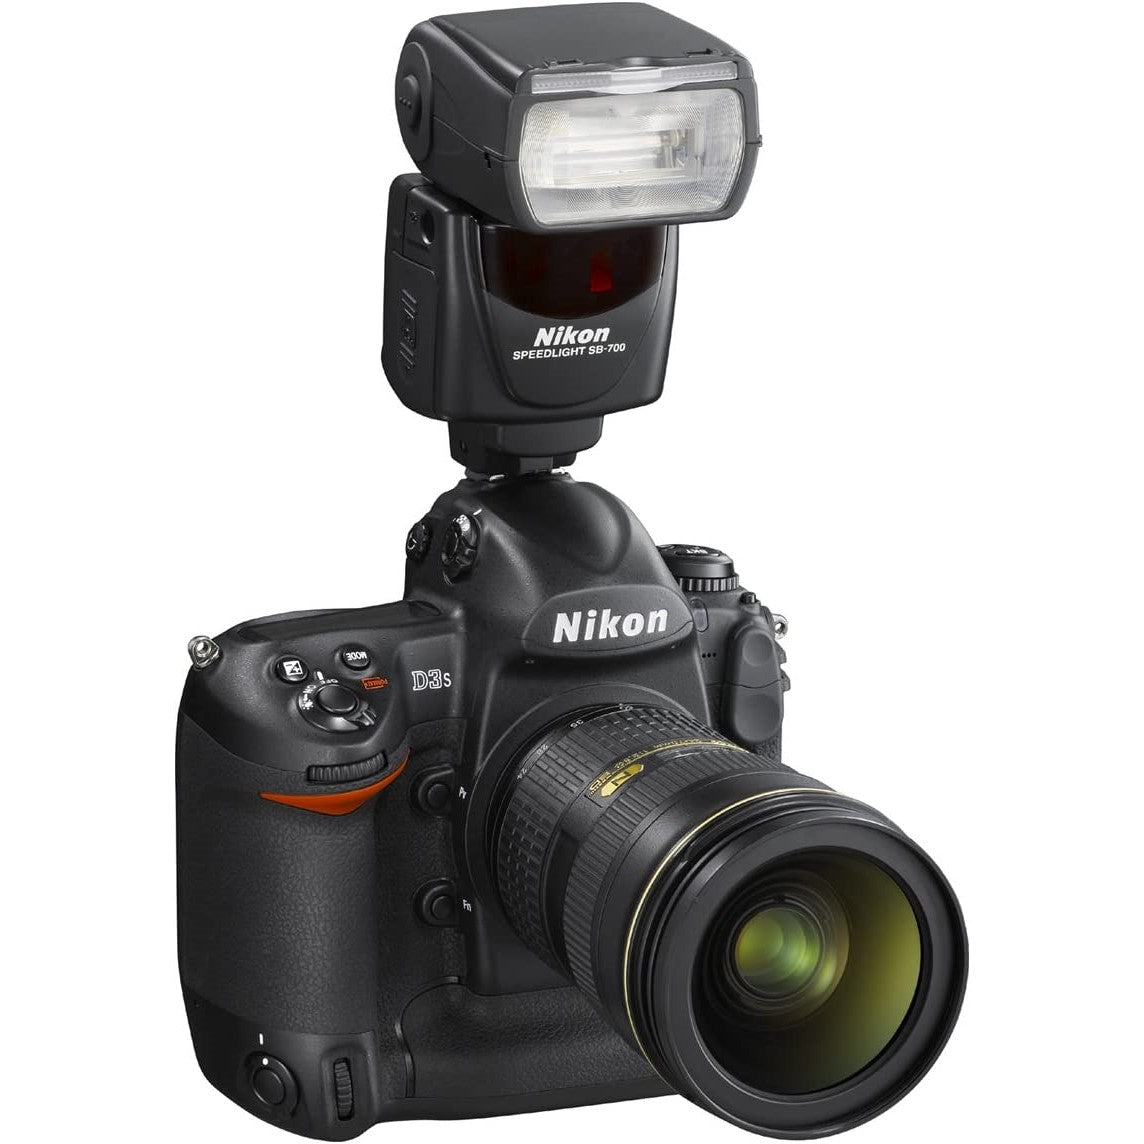 Nikon SB-700 Speedlight Flash Nikon